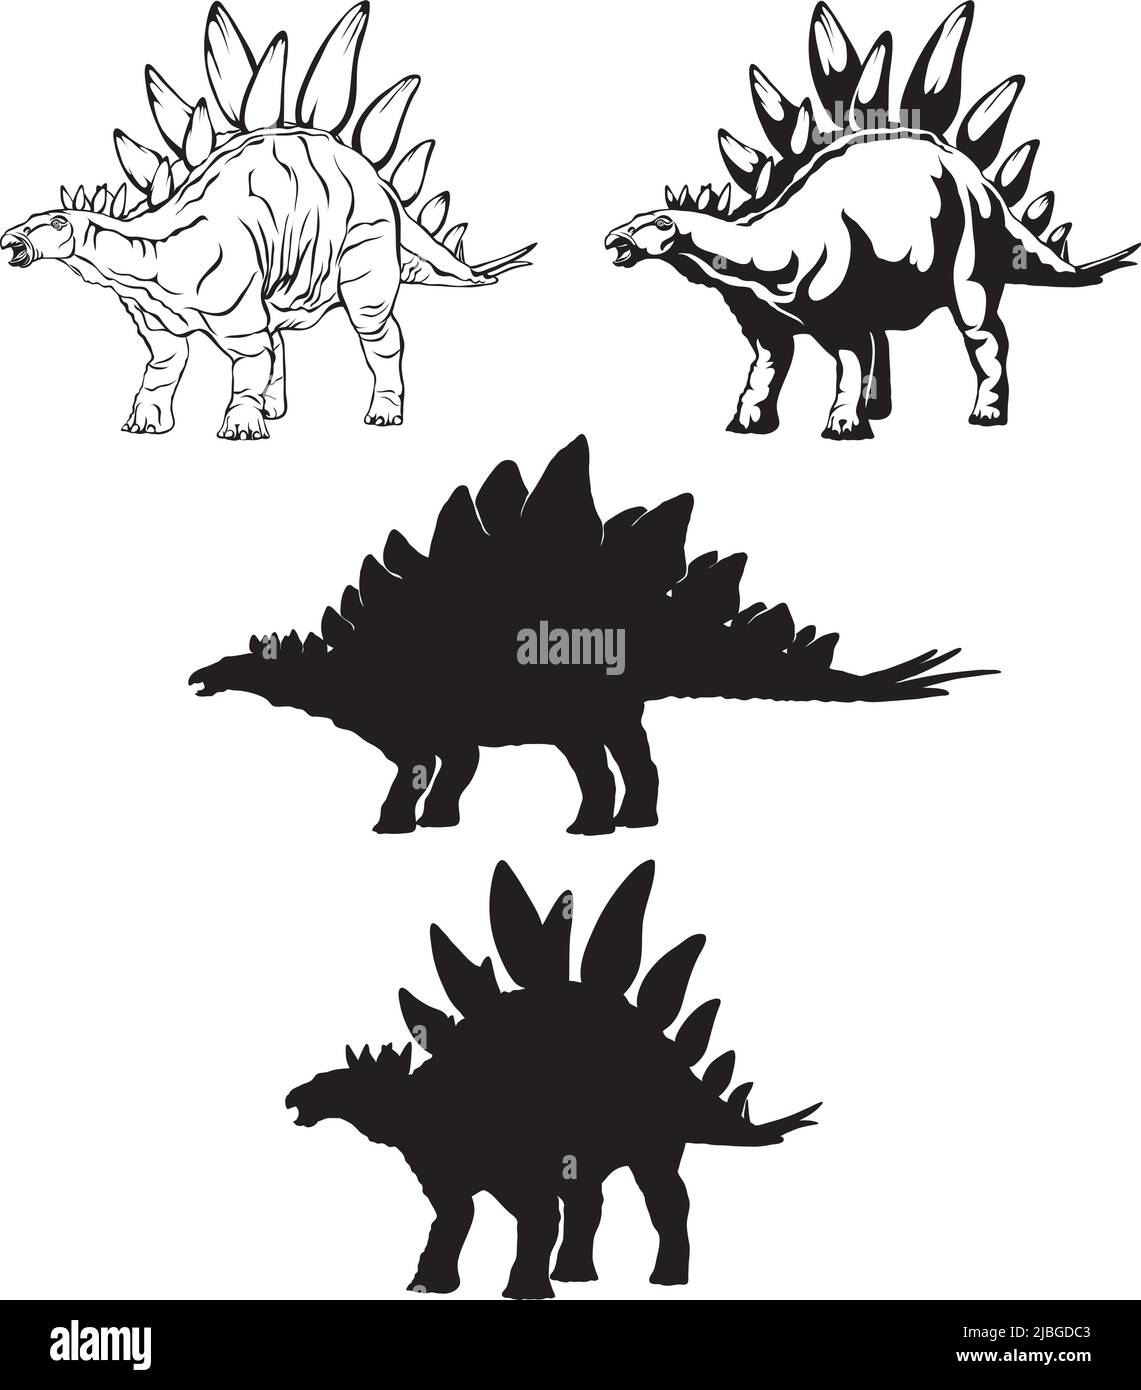 stegosaurus, imagen realista de dinosaurio, vector, posiciones, ilustración, blanco y negro, silueta, logotipo, marca registrada, chevron para decoración y diseño Ilustración del Vector